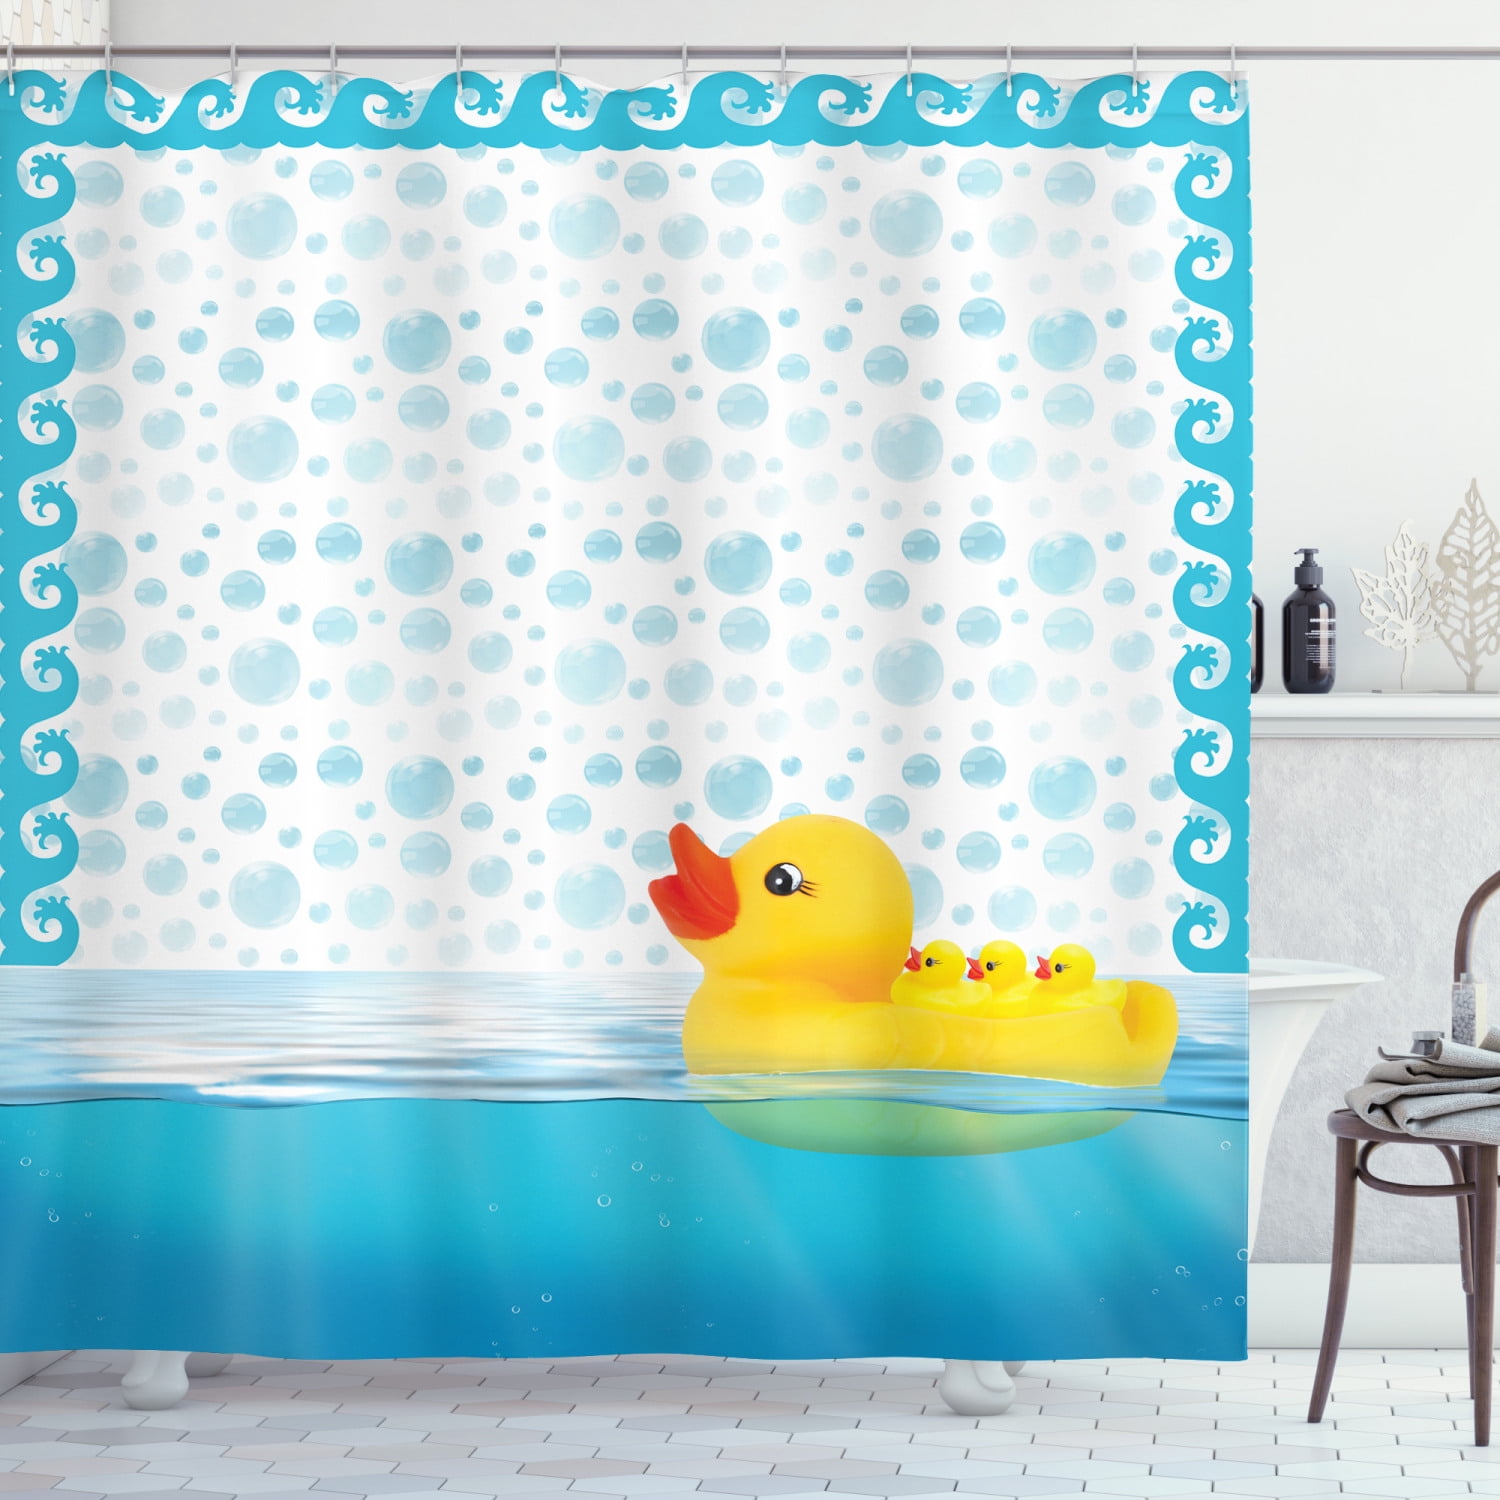 Ducks Unlimited Fabric Shower Curtain Plaid 72" x 72" Geese Duckhead Logo Bath